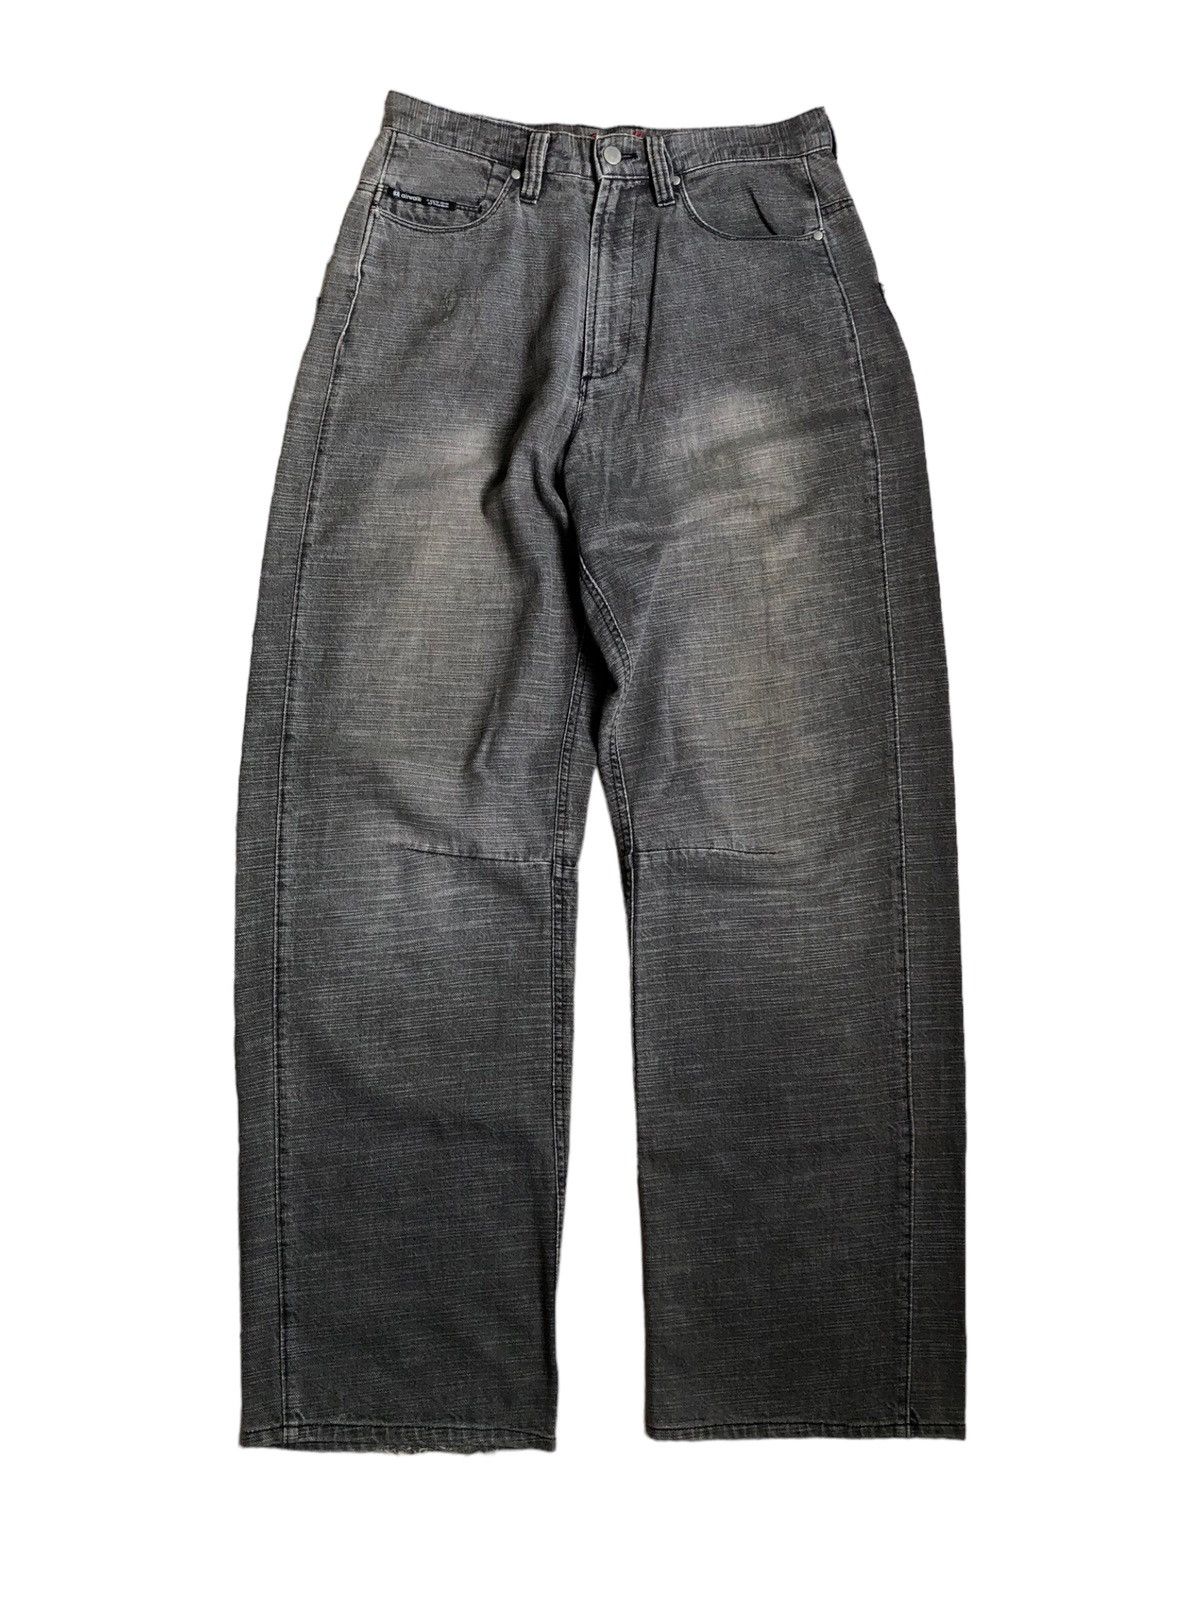 Streetwear Vintage Airwalk Baggy Denim Pants | Grailed